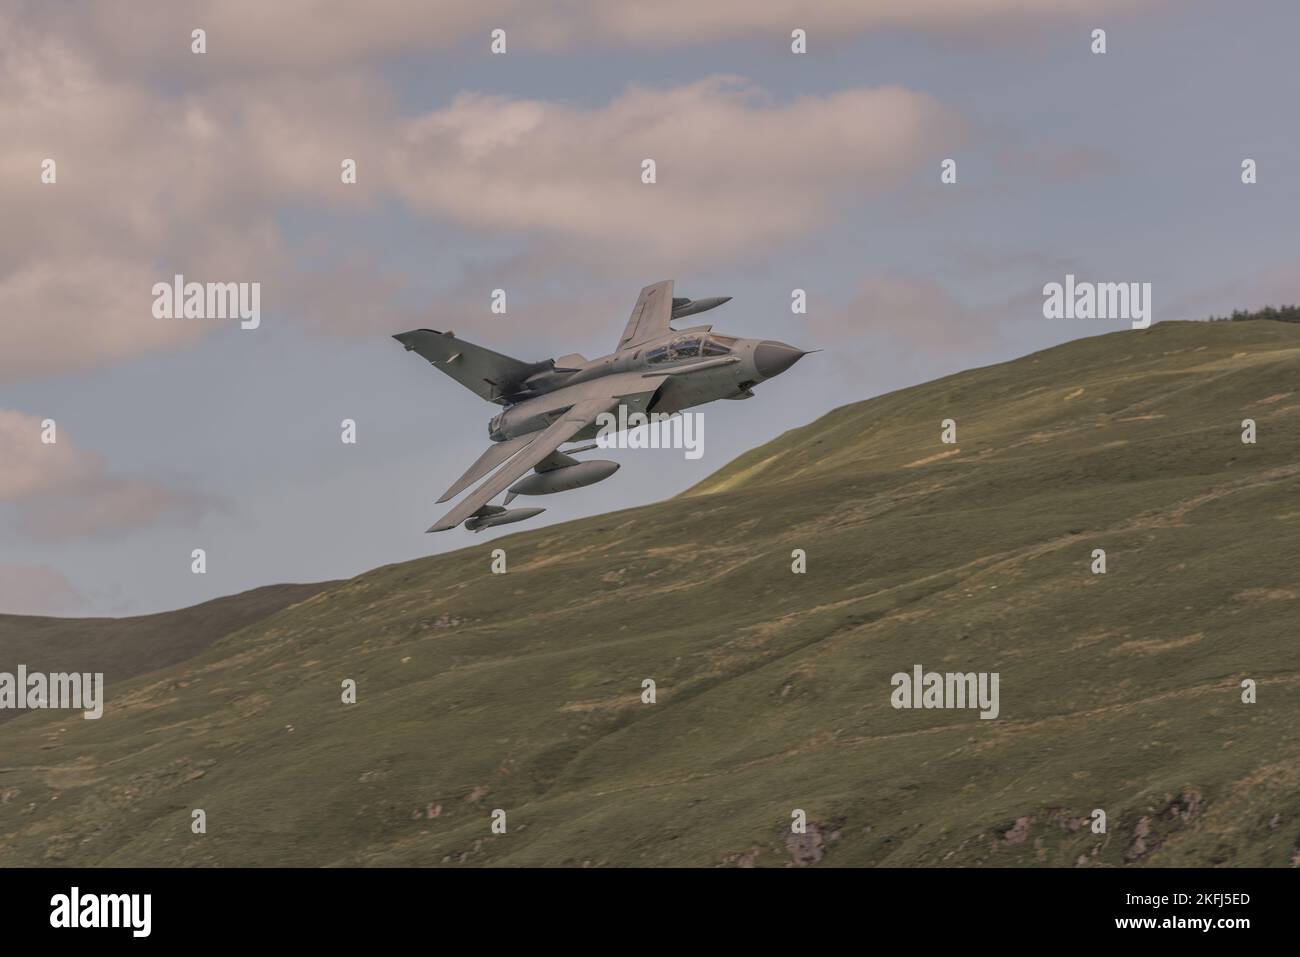 Avion de chasse militaire volant très bas et rapide à travers la boucle Mach au pays de Galles. Collines en arrière-plan. Banque D'Images